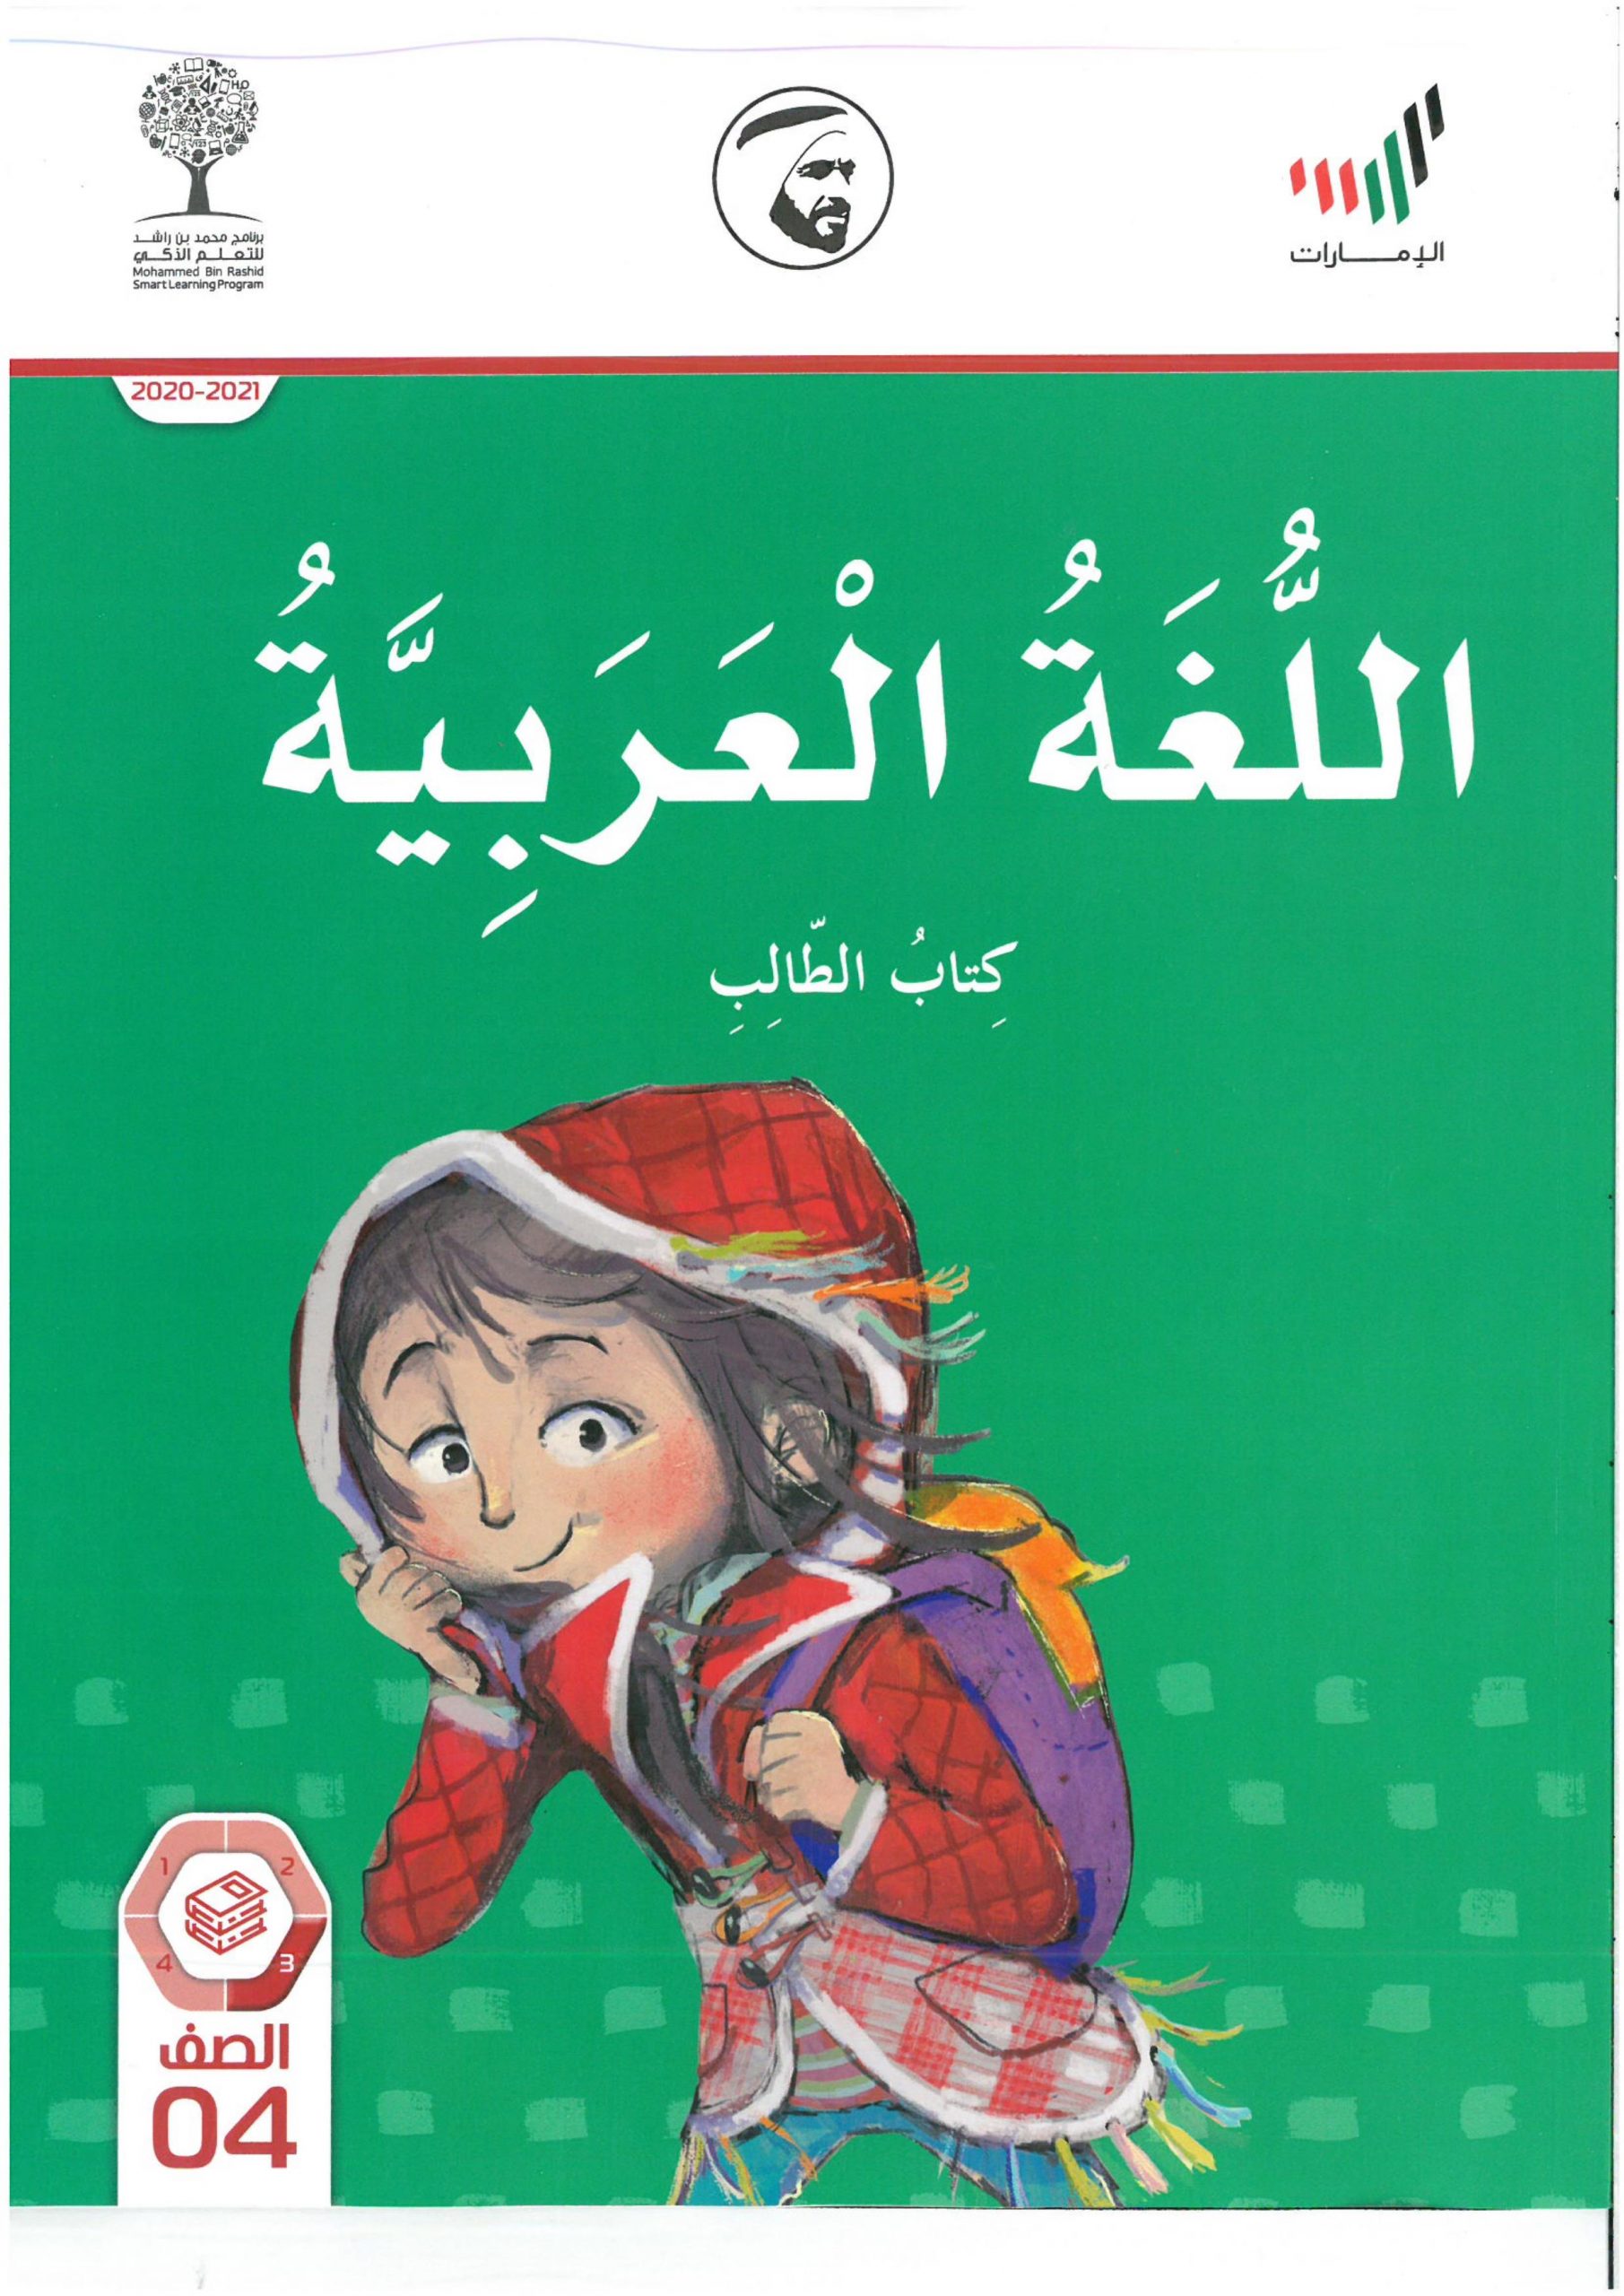 كتاب الطالب الفصل الدراسي الثاني 2020-2021 الصف الرابع مادة اللغة العربية 